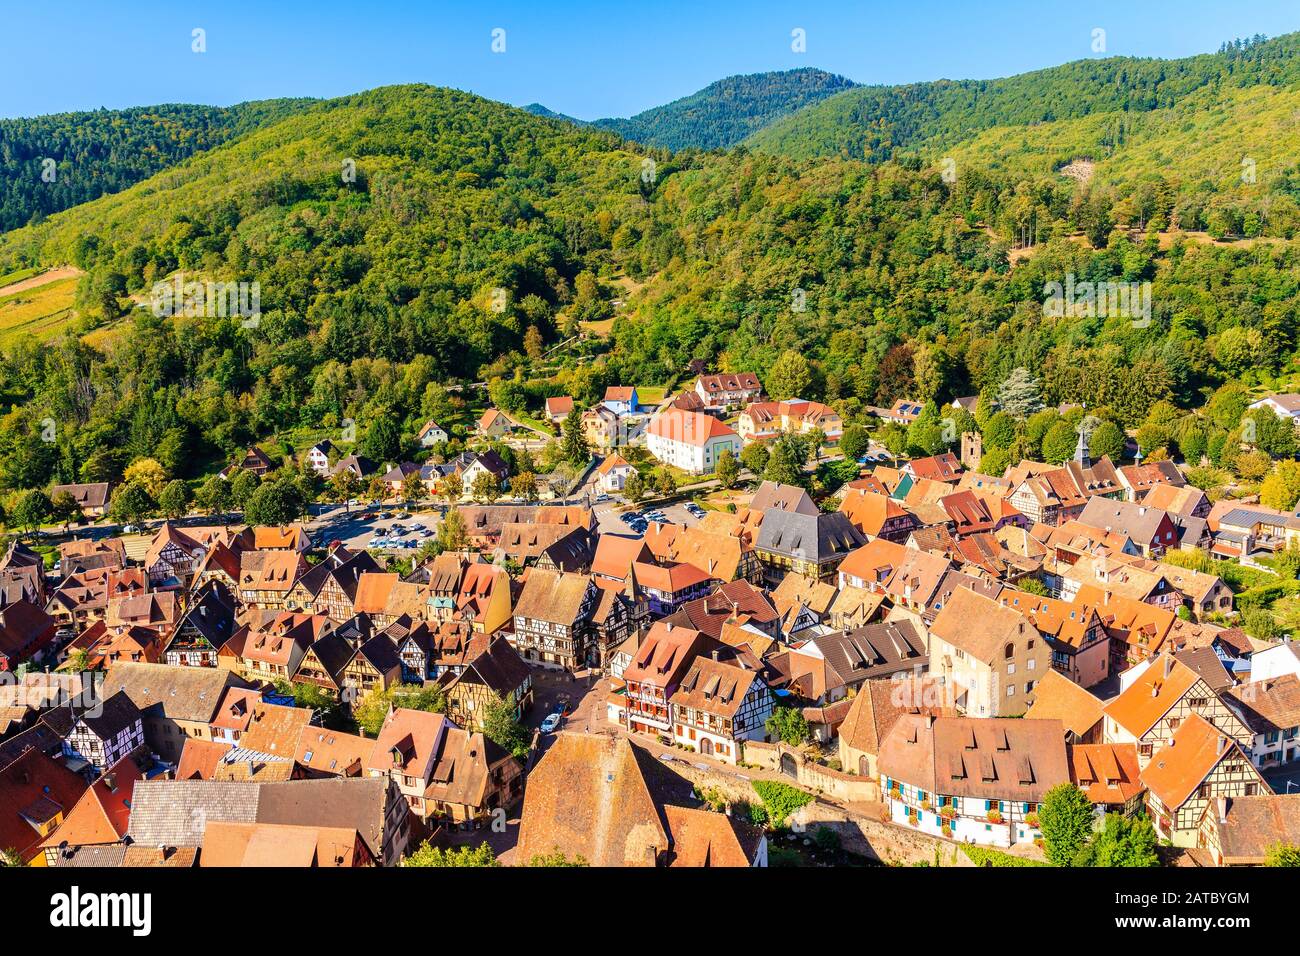 Vista de la ciudad de Kaysersberg y casas coloridas, Ruta del vino de Alsacia, Francia Foto de stock